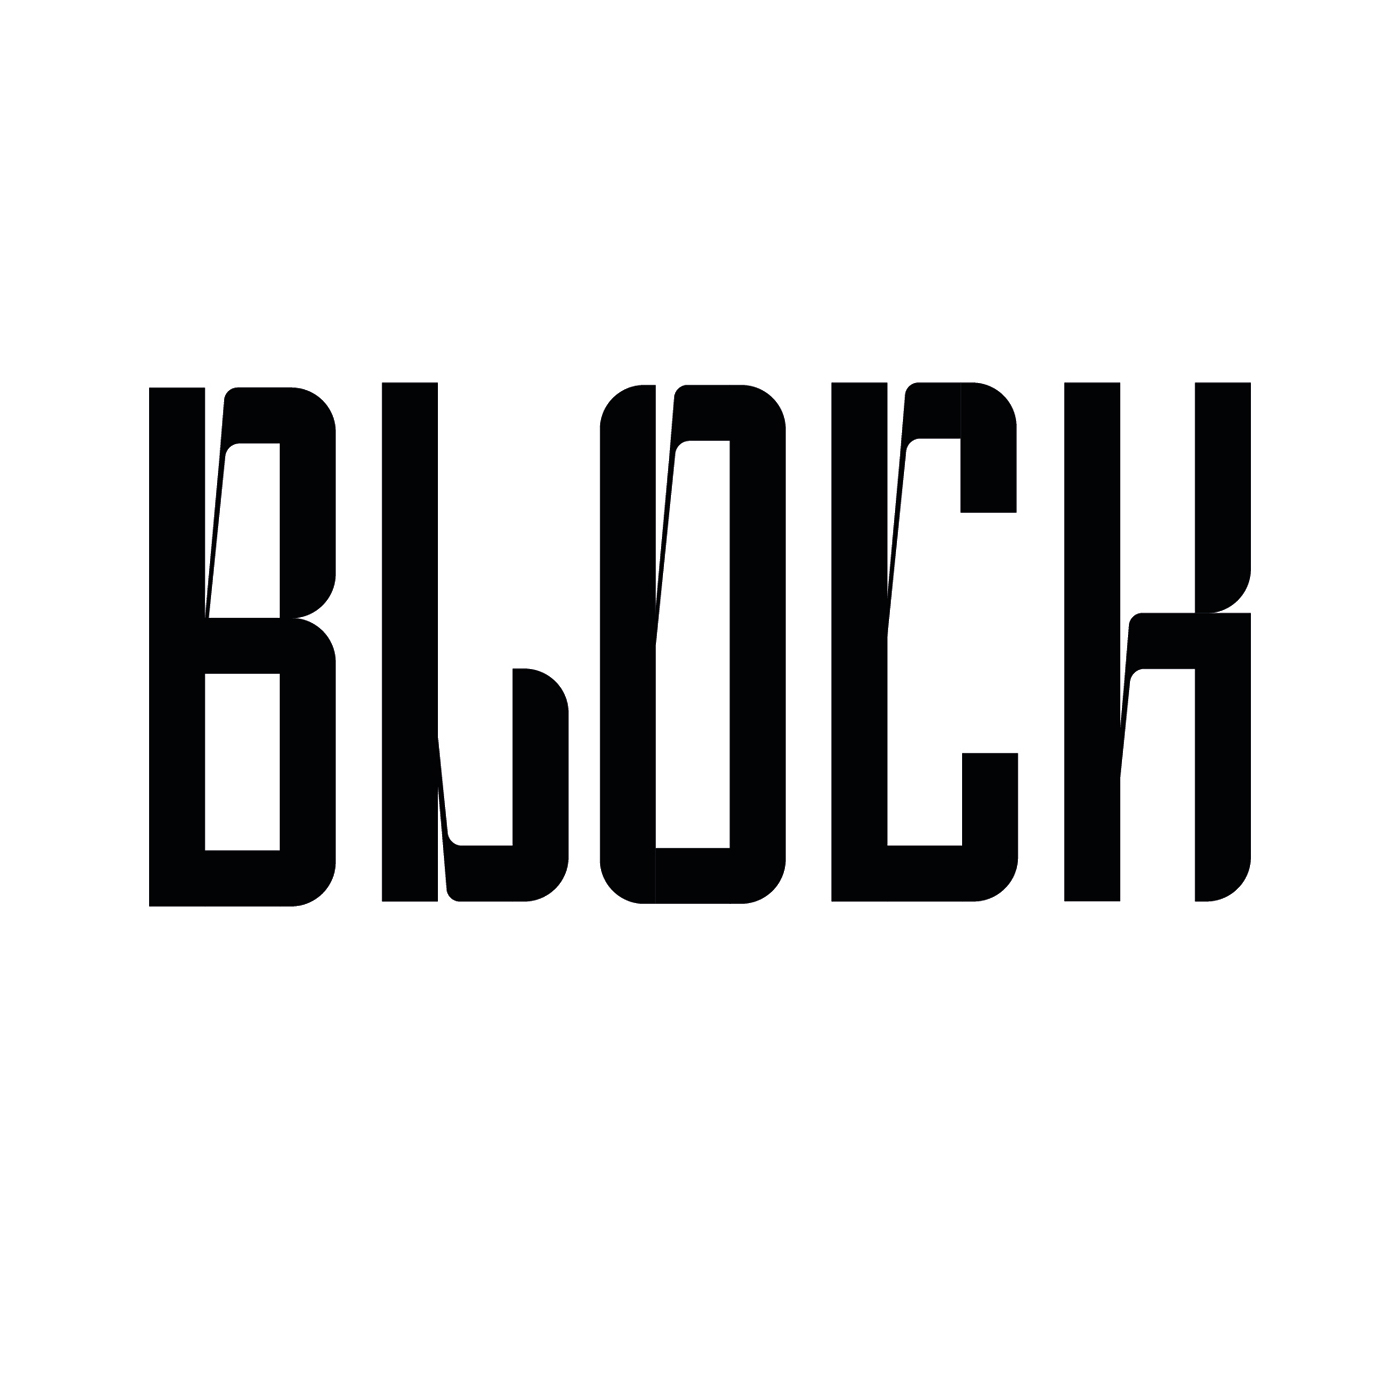 blockletter Blackletter Calligraphy   typeface design glyphs Illustrator